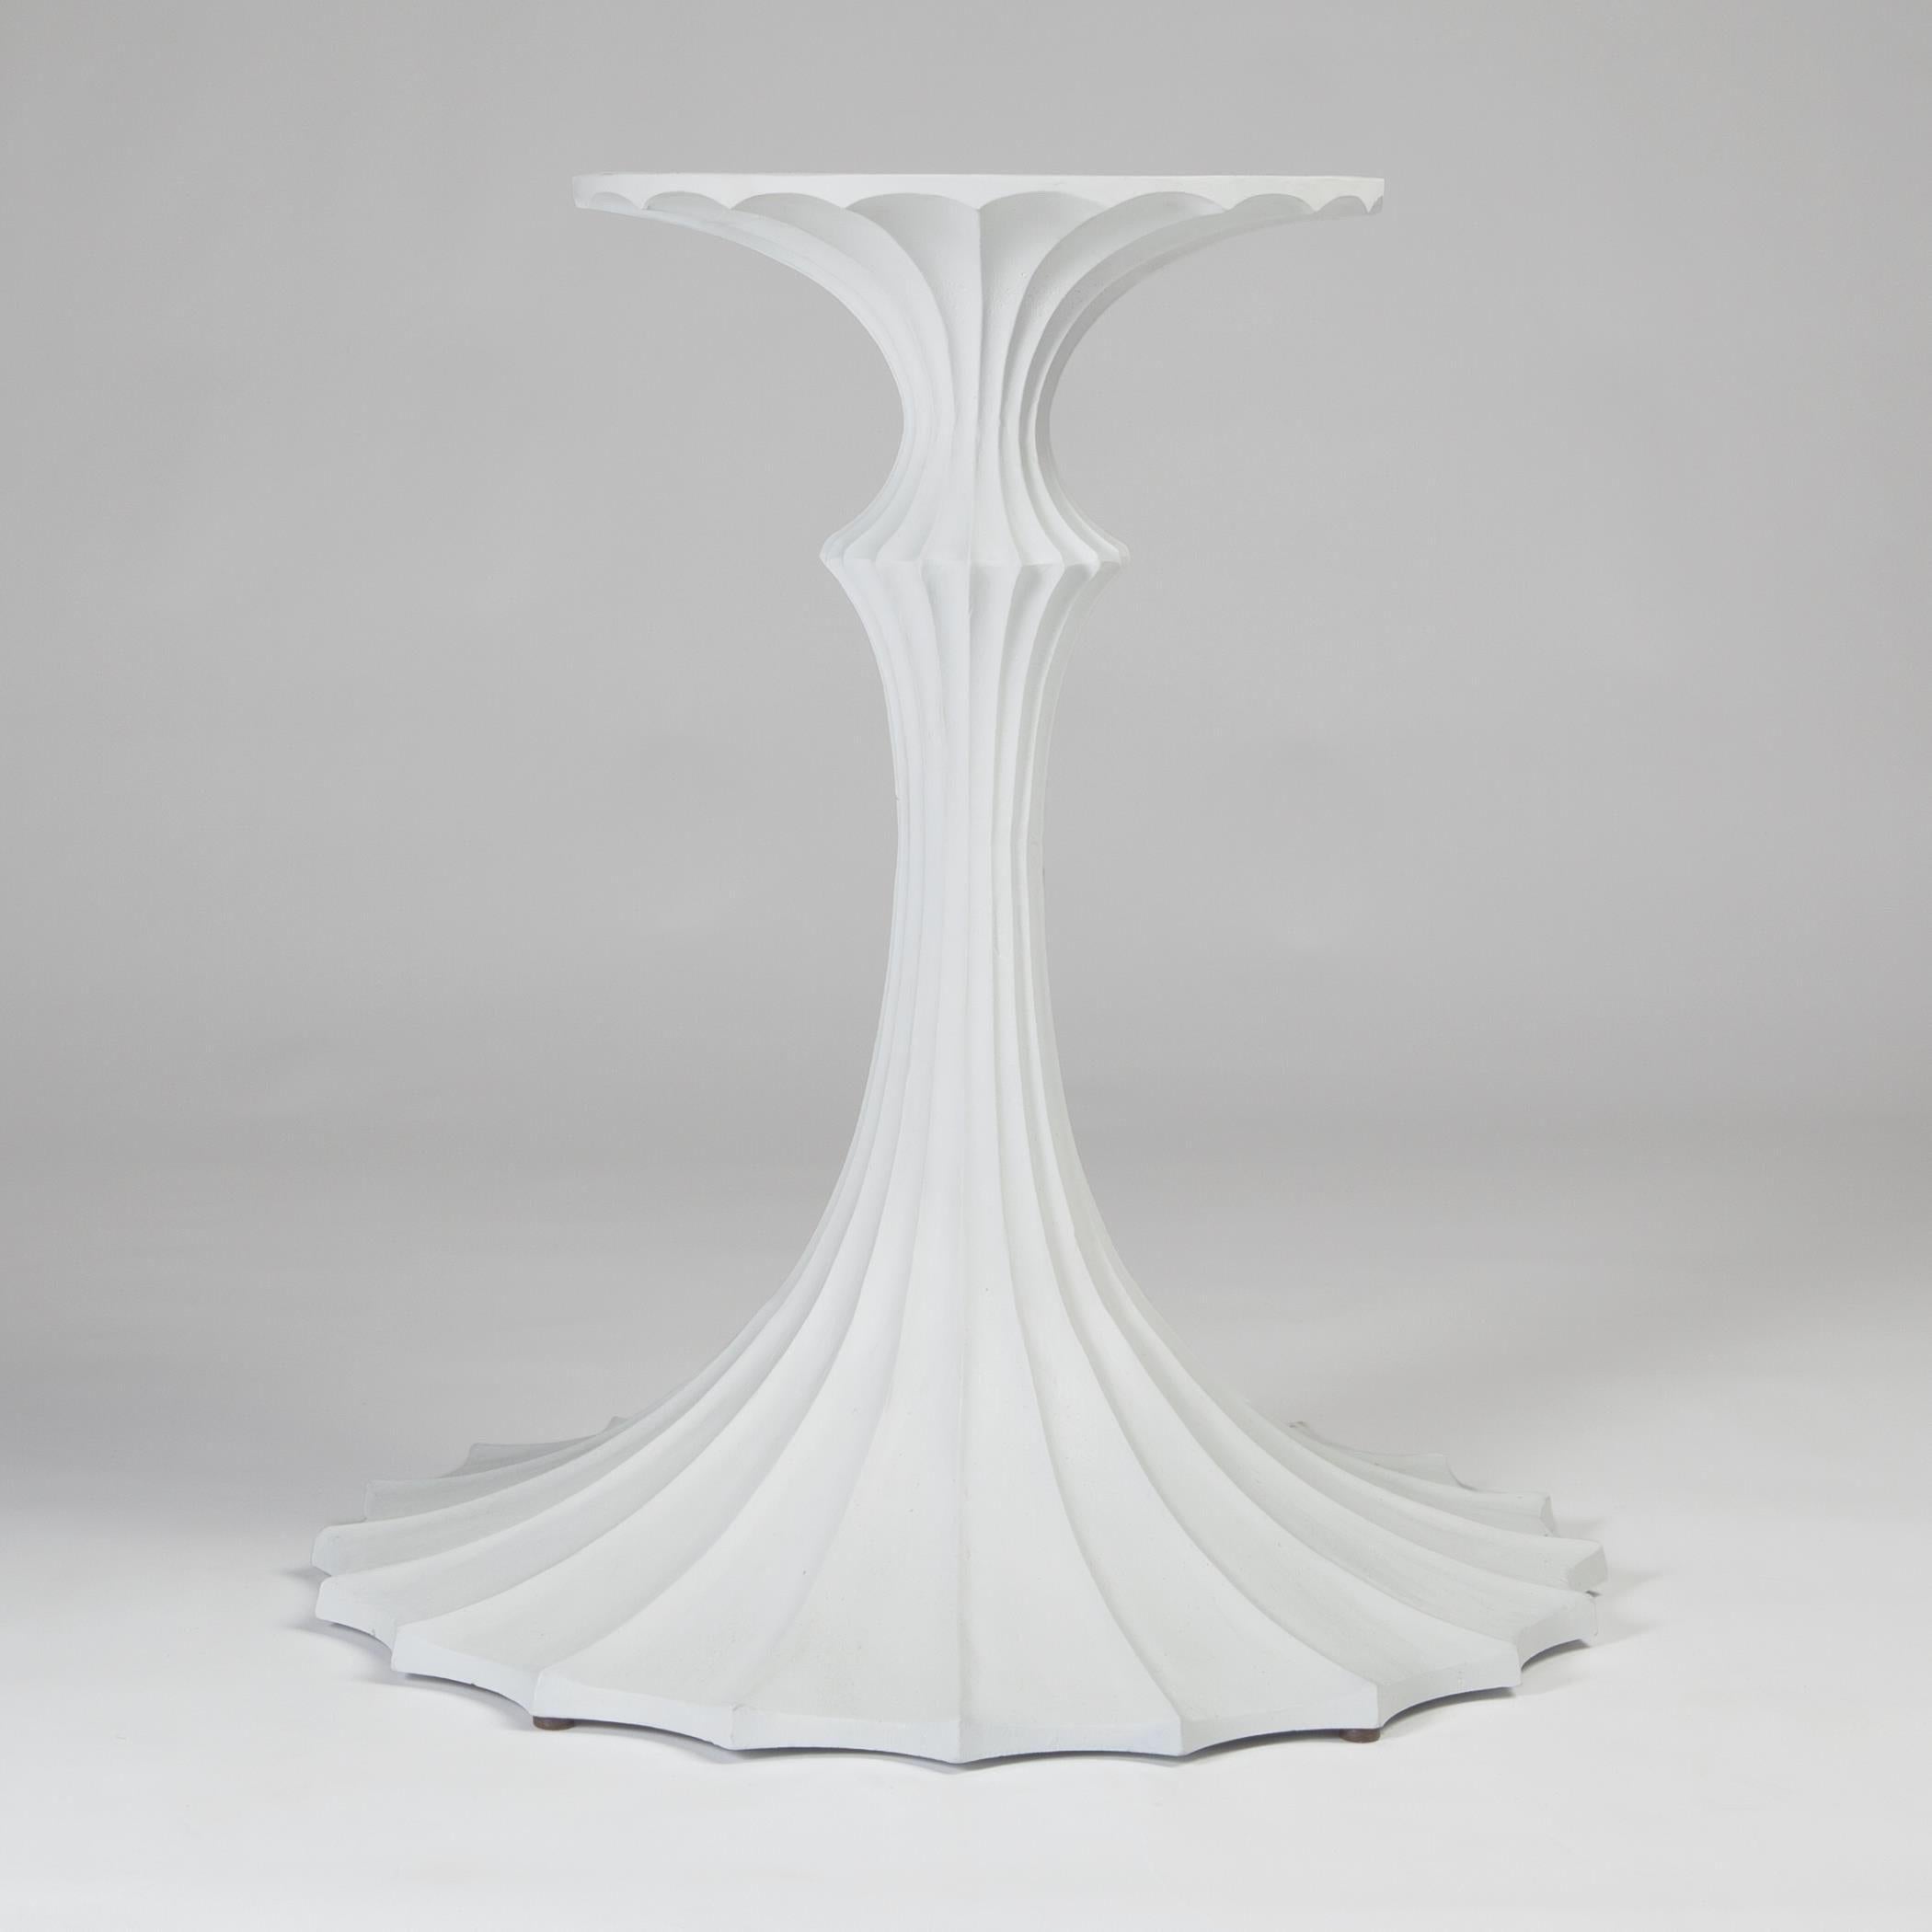 Flötenförmiges Tischgestell aus Eisen von William D Scott in Weiß.   Bitte beachten Sie...nur Tischfuß.  

Fließende, geriffelte Details machen den klassischen Tulpenfuß interessant und passen perfekt zu Holz- und Marmorplatten.  Kombinieren Sie, um